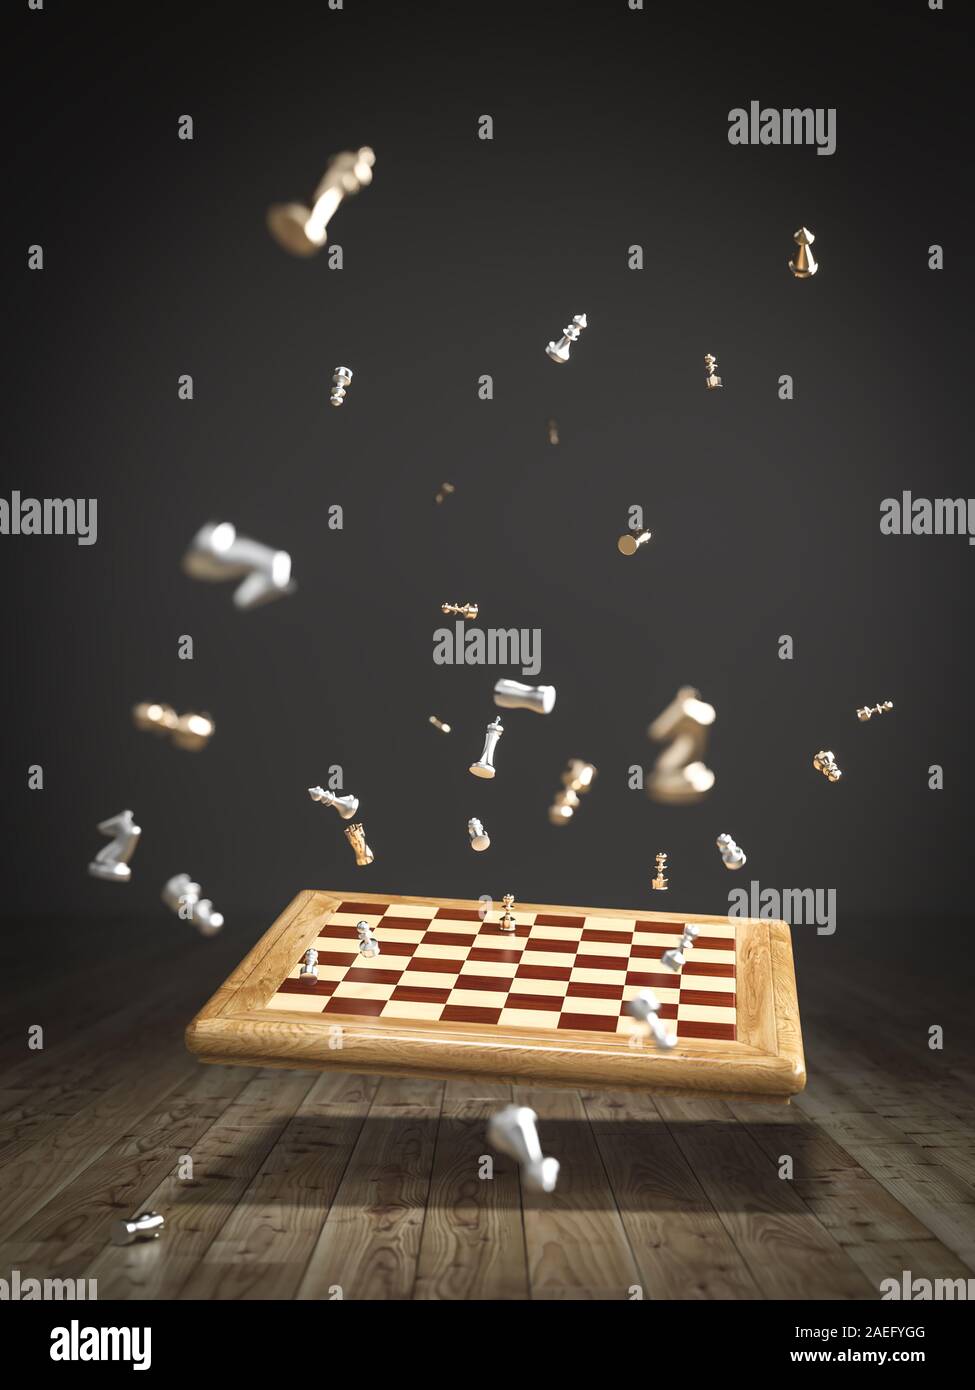 Bild von einem Schachbrett auf dem Holzboden, zerstreut und fliegende Teile. 3D-Render Bild. Stockfoto